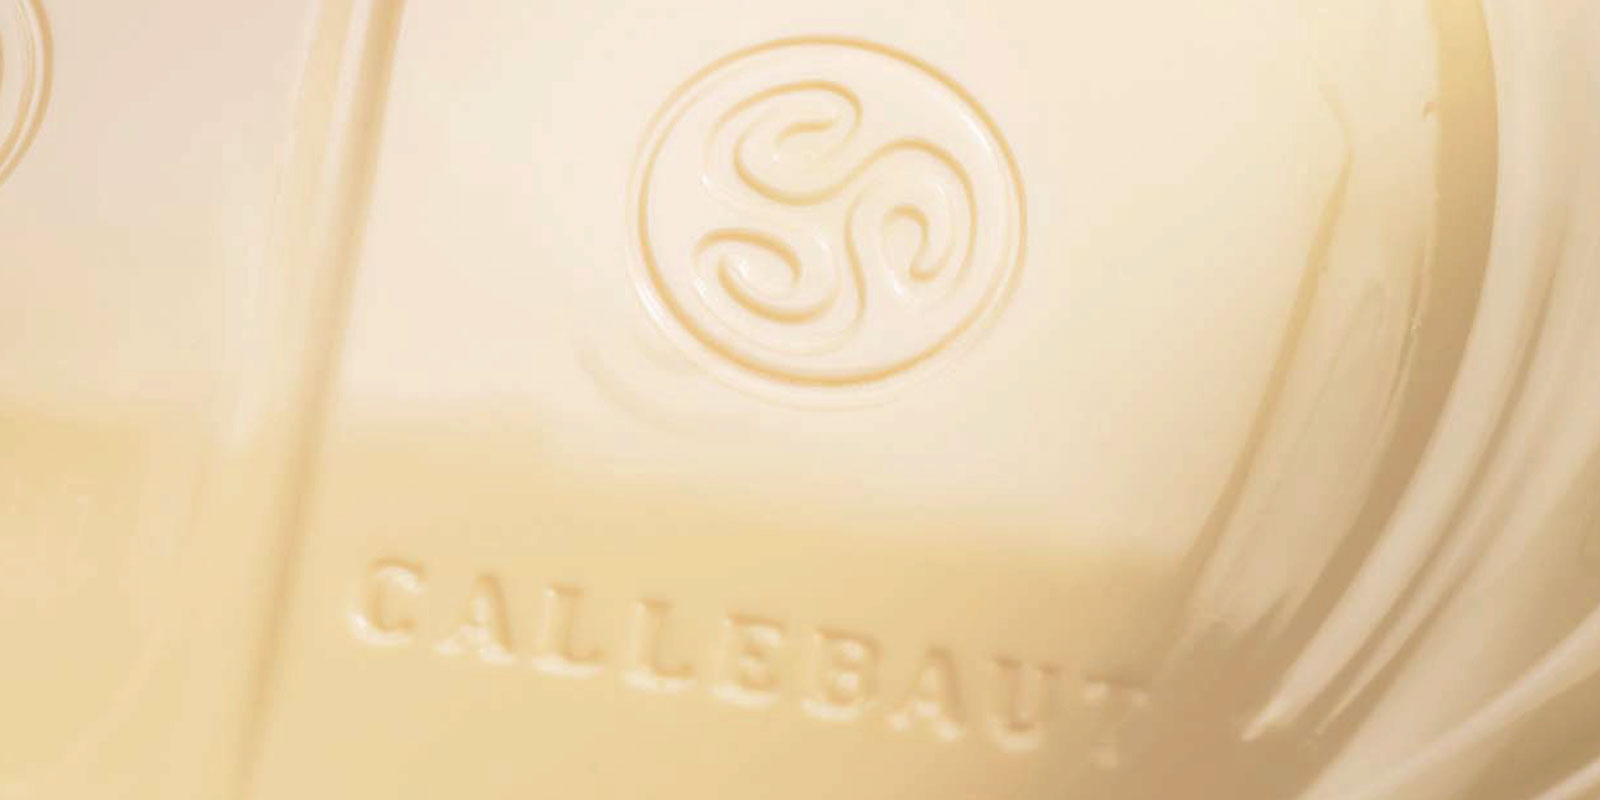 Callebaut`tan beyaz cikolatalar Beyaz cikolata, kakao yagi, sut tozu ve sekerin karistirilmasinin sonucudur. Vanilin, vanilya veya lesitin gibi bu bilesenlerin karisim orani, son urunun tadini belirler.